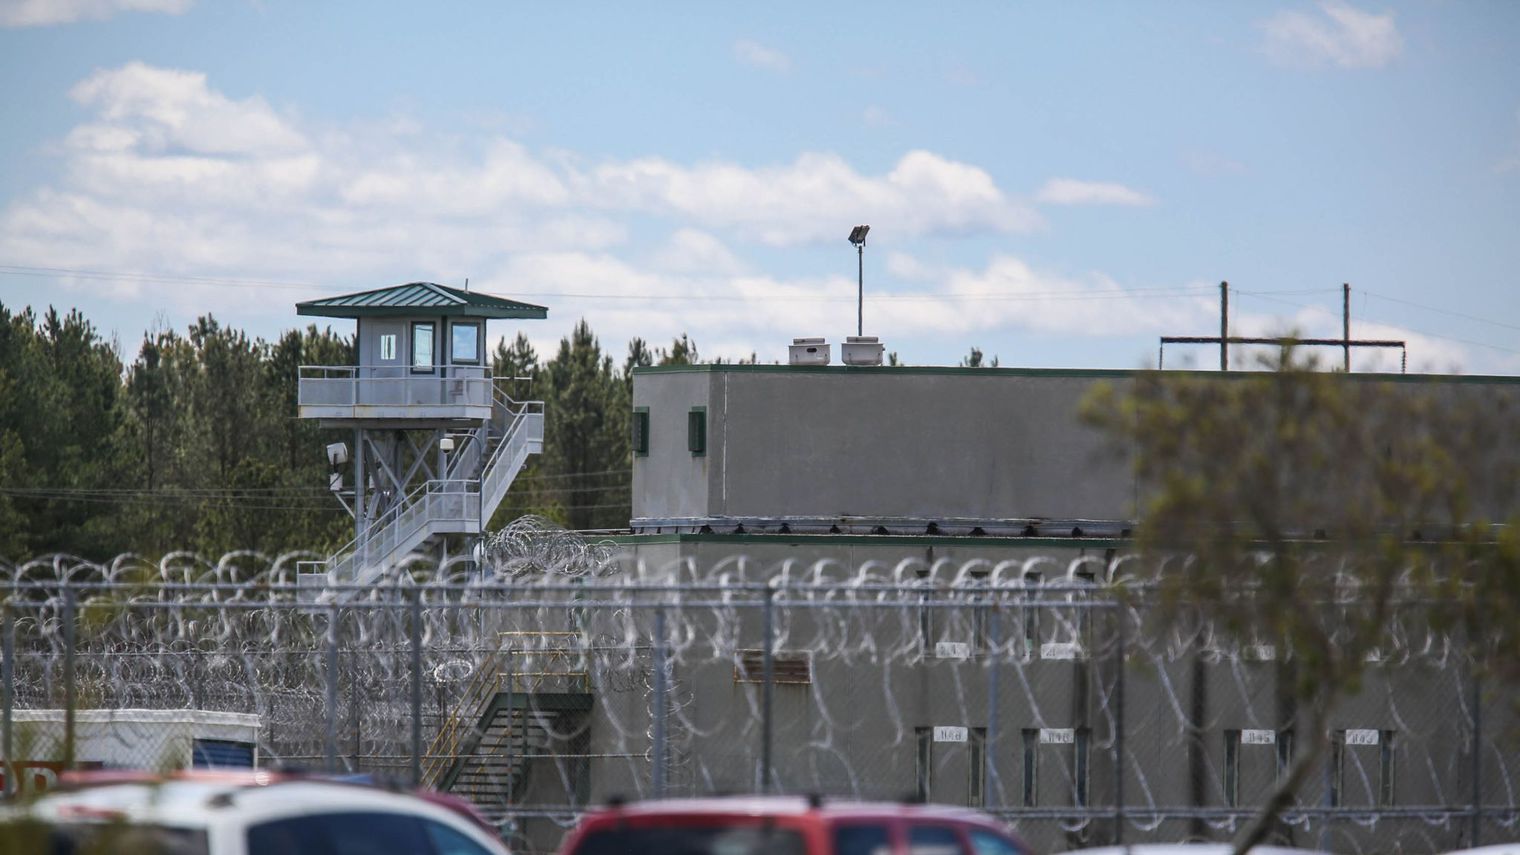 Etats-Unis : sept morts lors d’une mutinerie dans une prison de Caroline du Sud